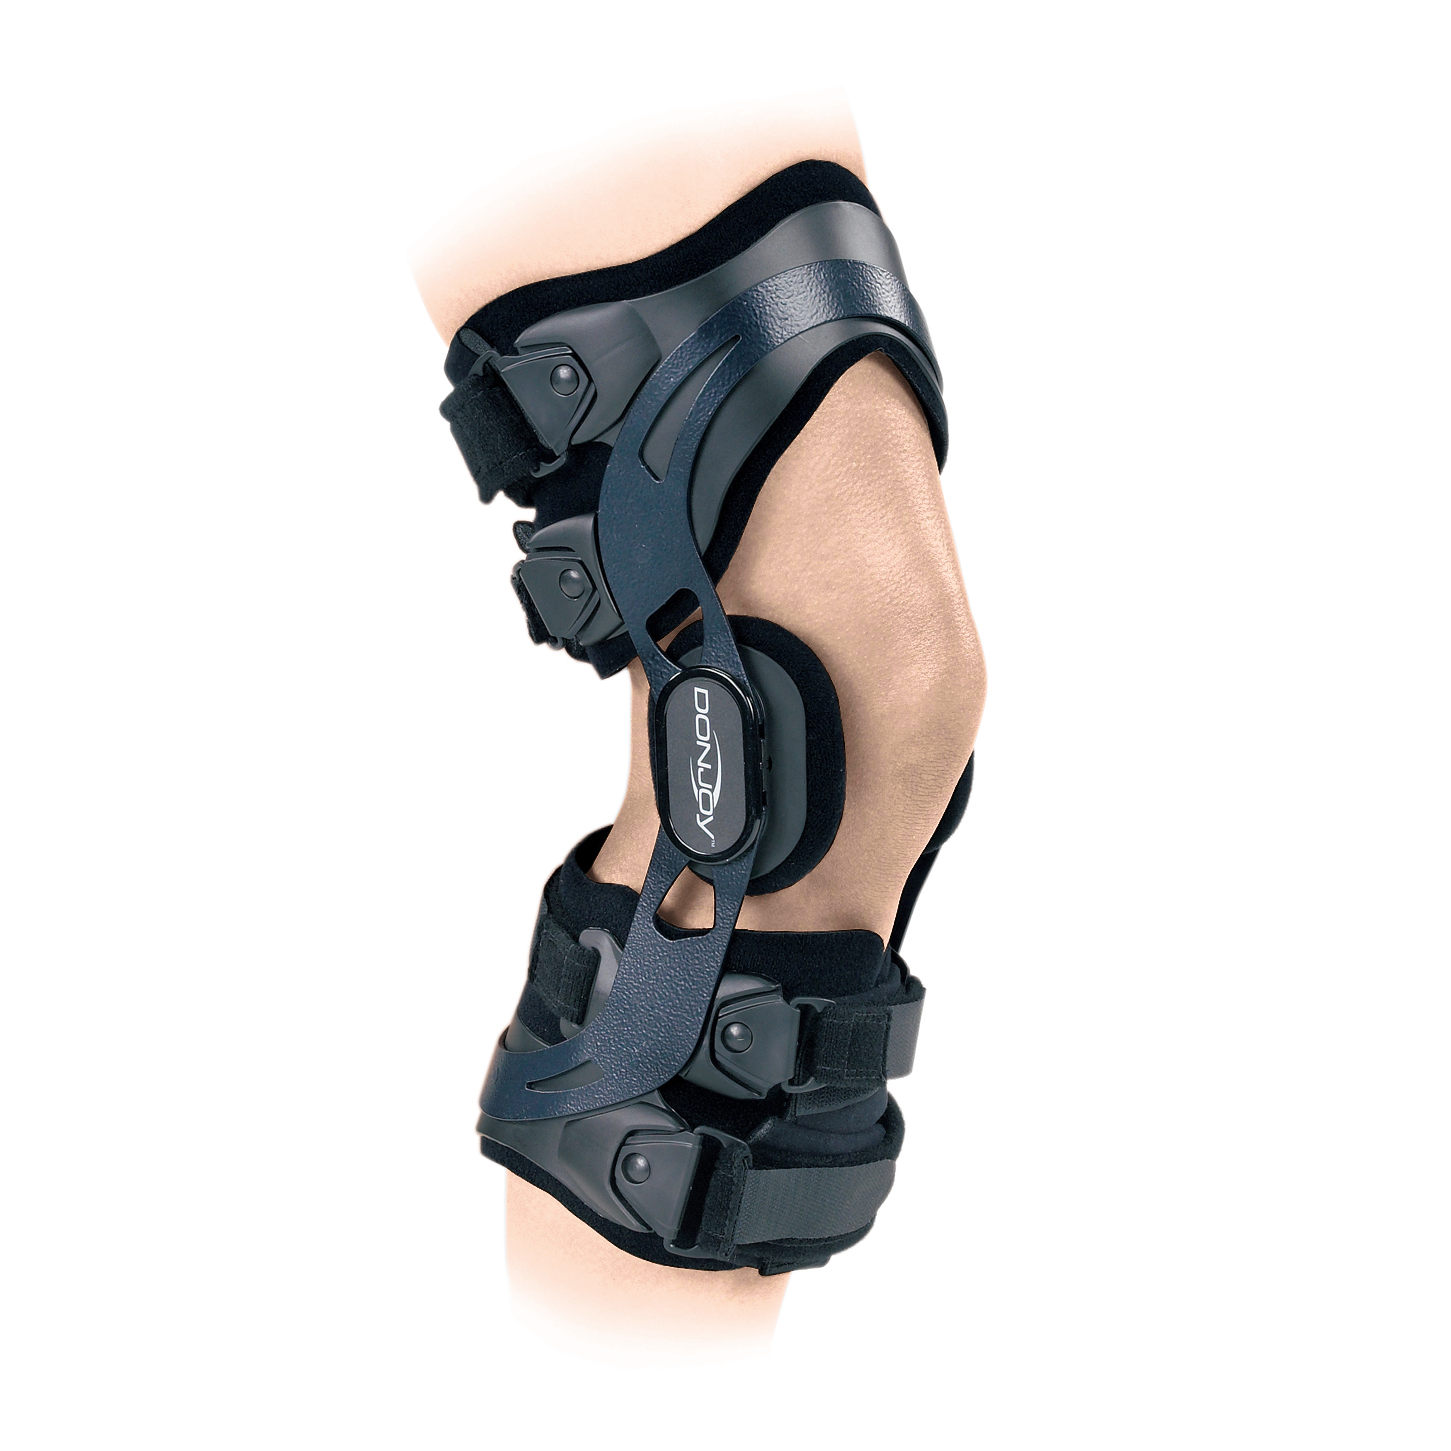 Produktbild DONJOY® ACL Everyday, Kurze Rahmenorthese zur Führung und Stabilisierung des Kniegelenks